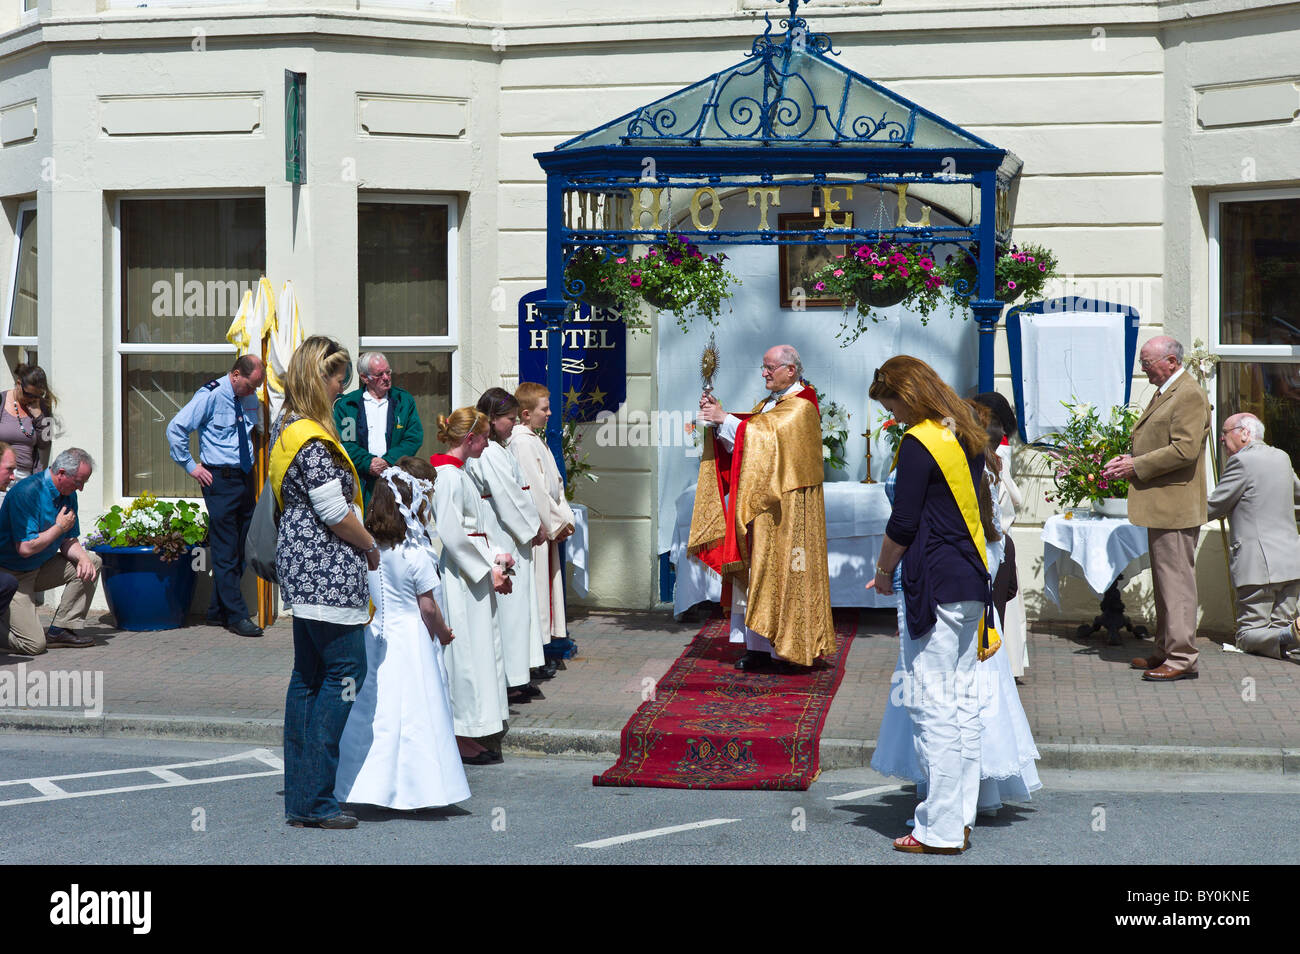 Prêtre porte Saint Sacrement à Corpus Christi traditionnelle cérémonie de bénédiction catholique à Clifden, comté de Galway, Irlande Banque D'Images